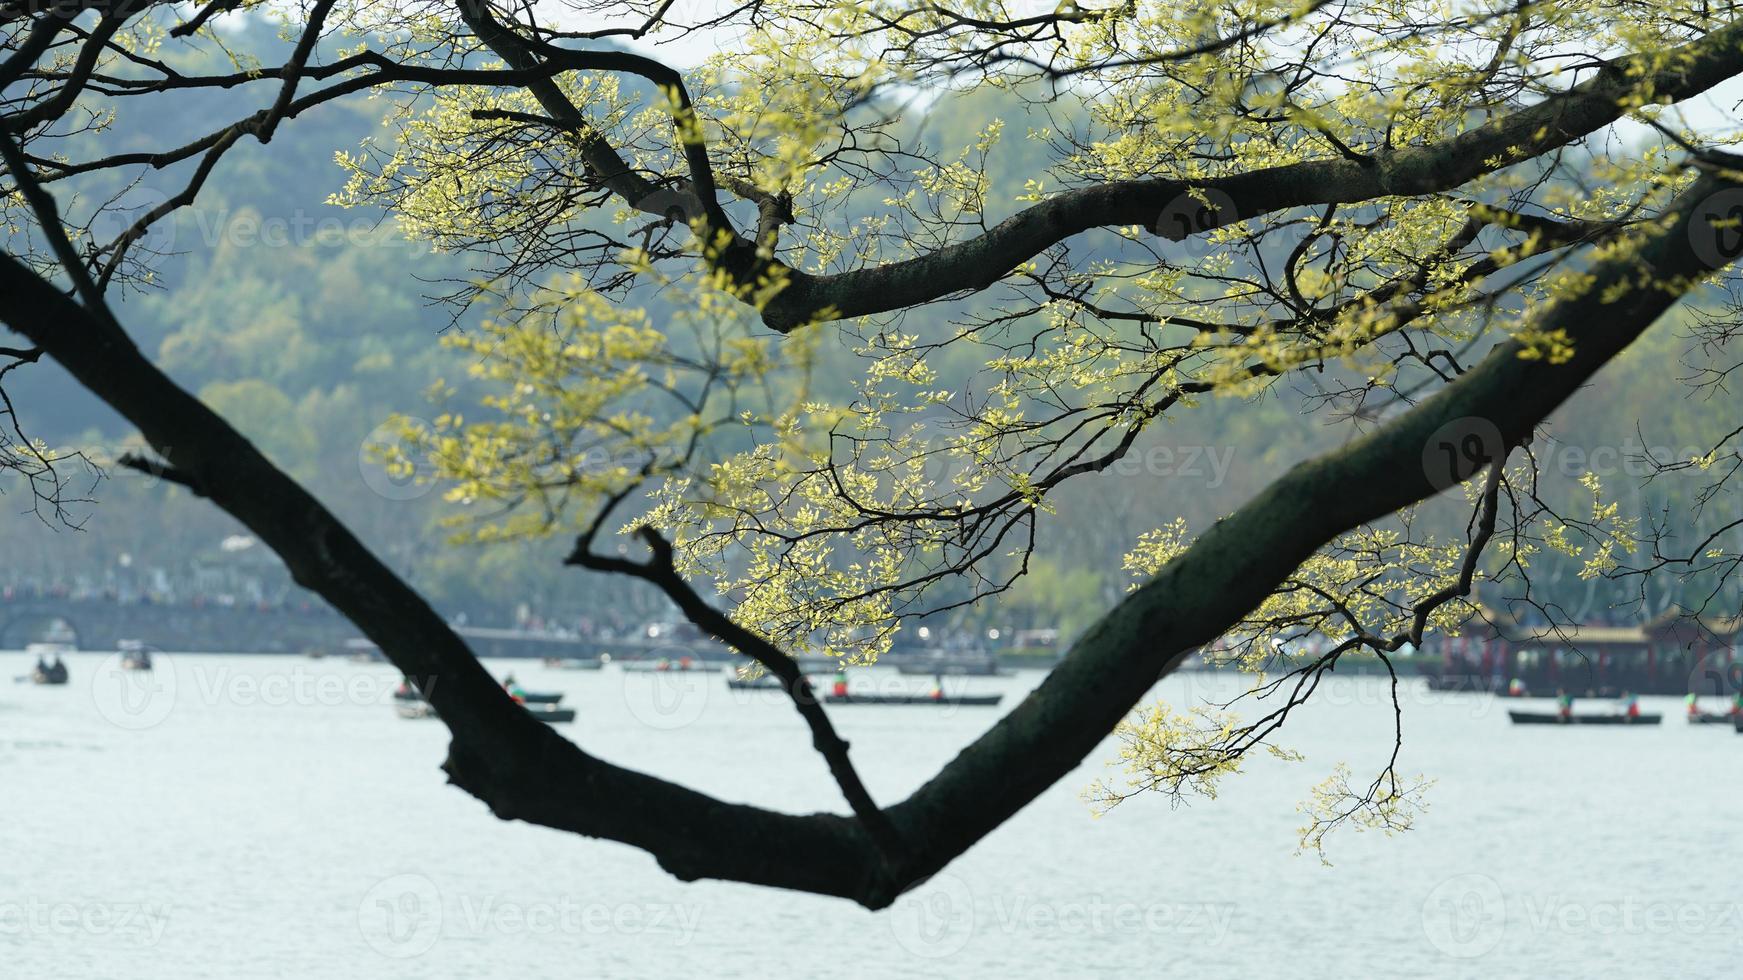 les magnifiques paysages lacustres de la ville de hangzhou en chine au printemps avec le lac paisible et les montagnes vertes et fraîches photo